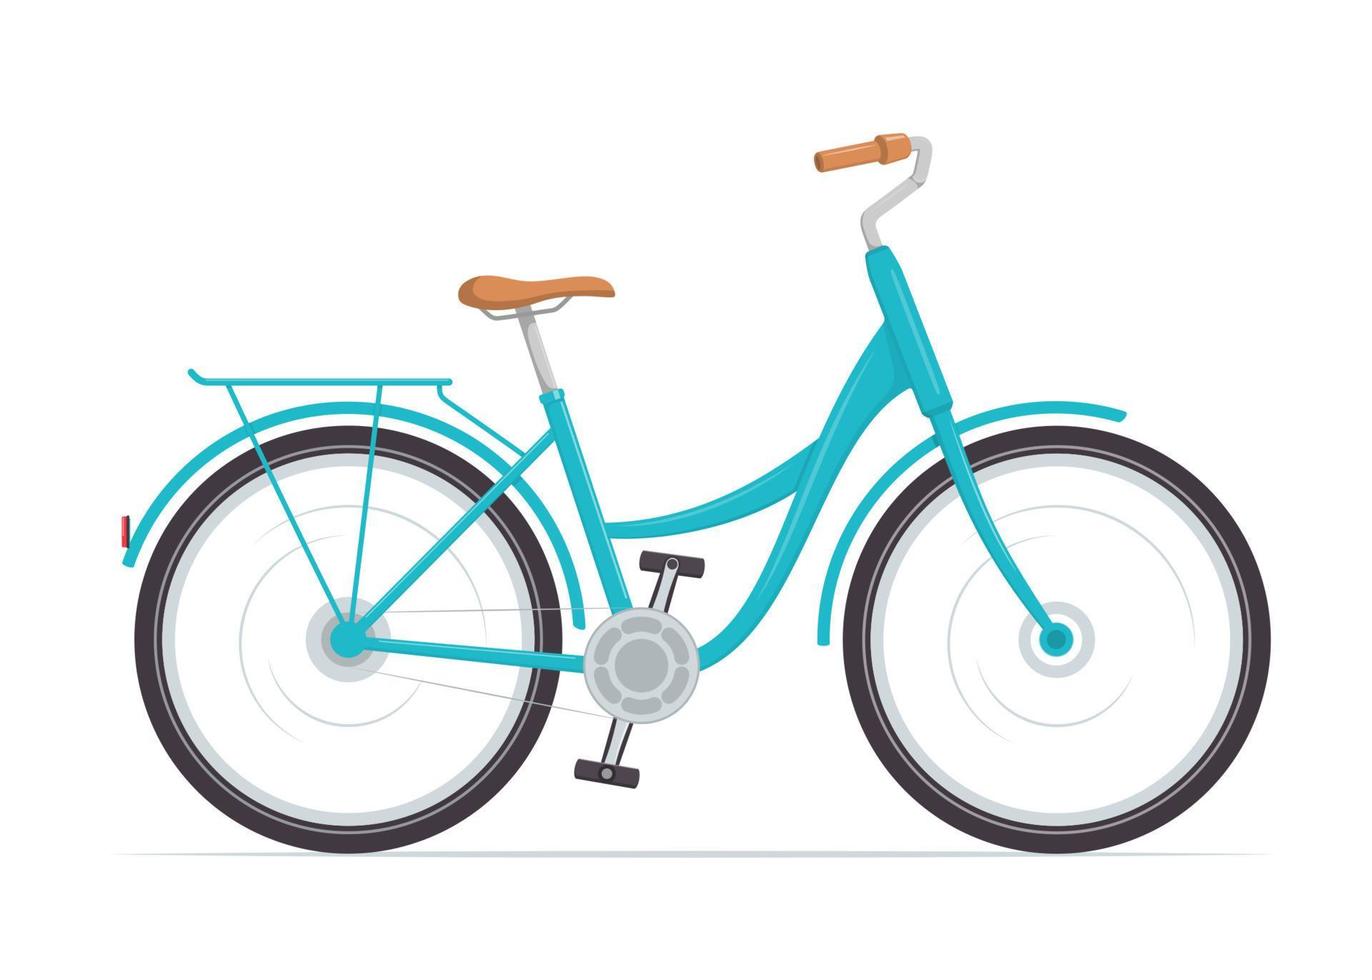 bicicleta feminina bonita com quadro baixo. bicicleta azul vintage. ilustração vetorial em estilo simples. vetor